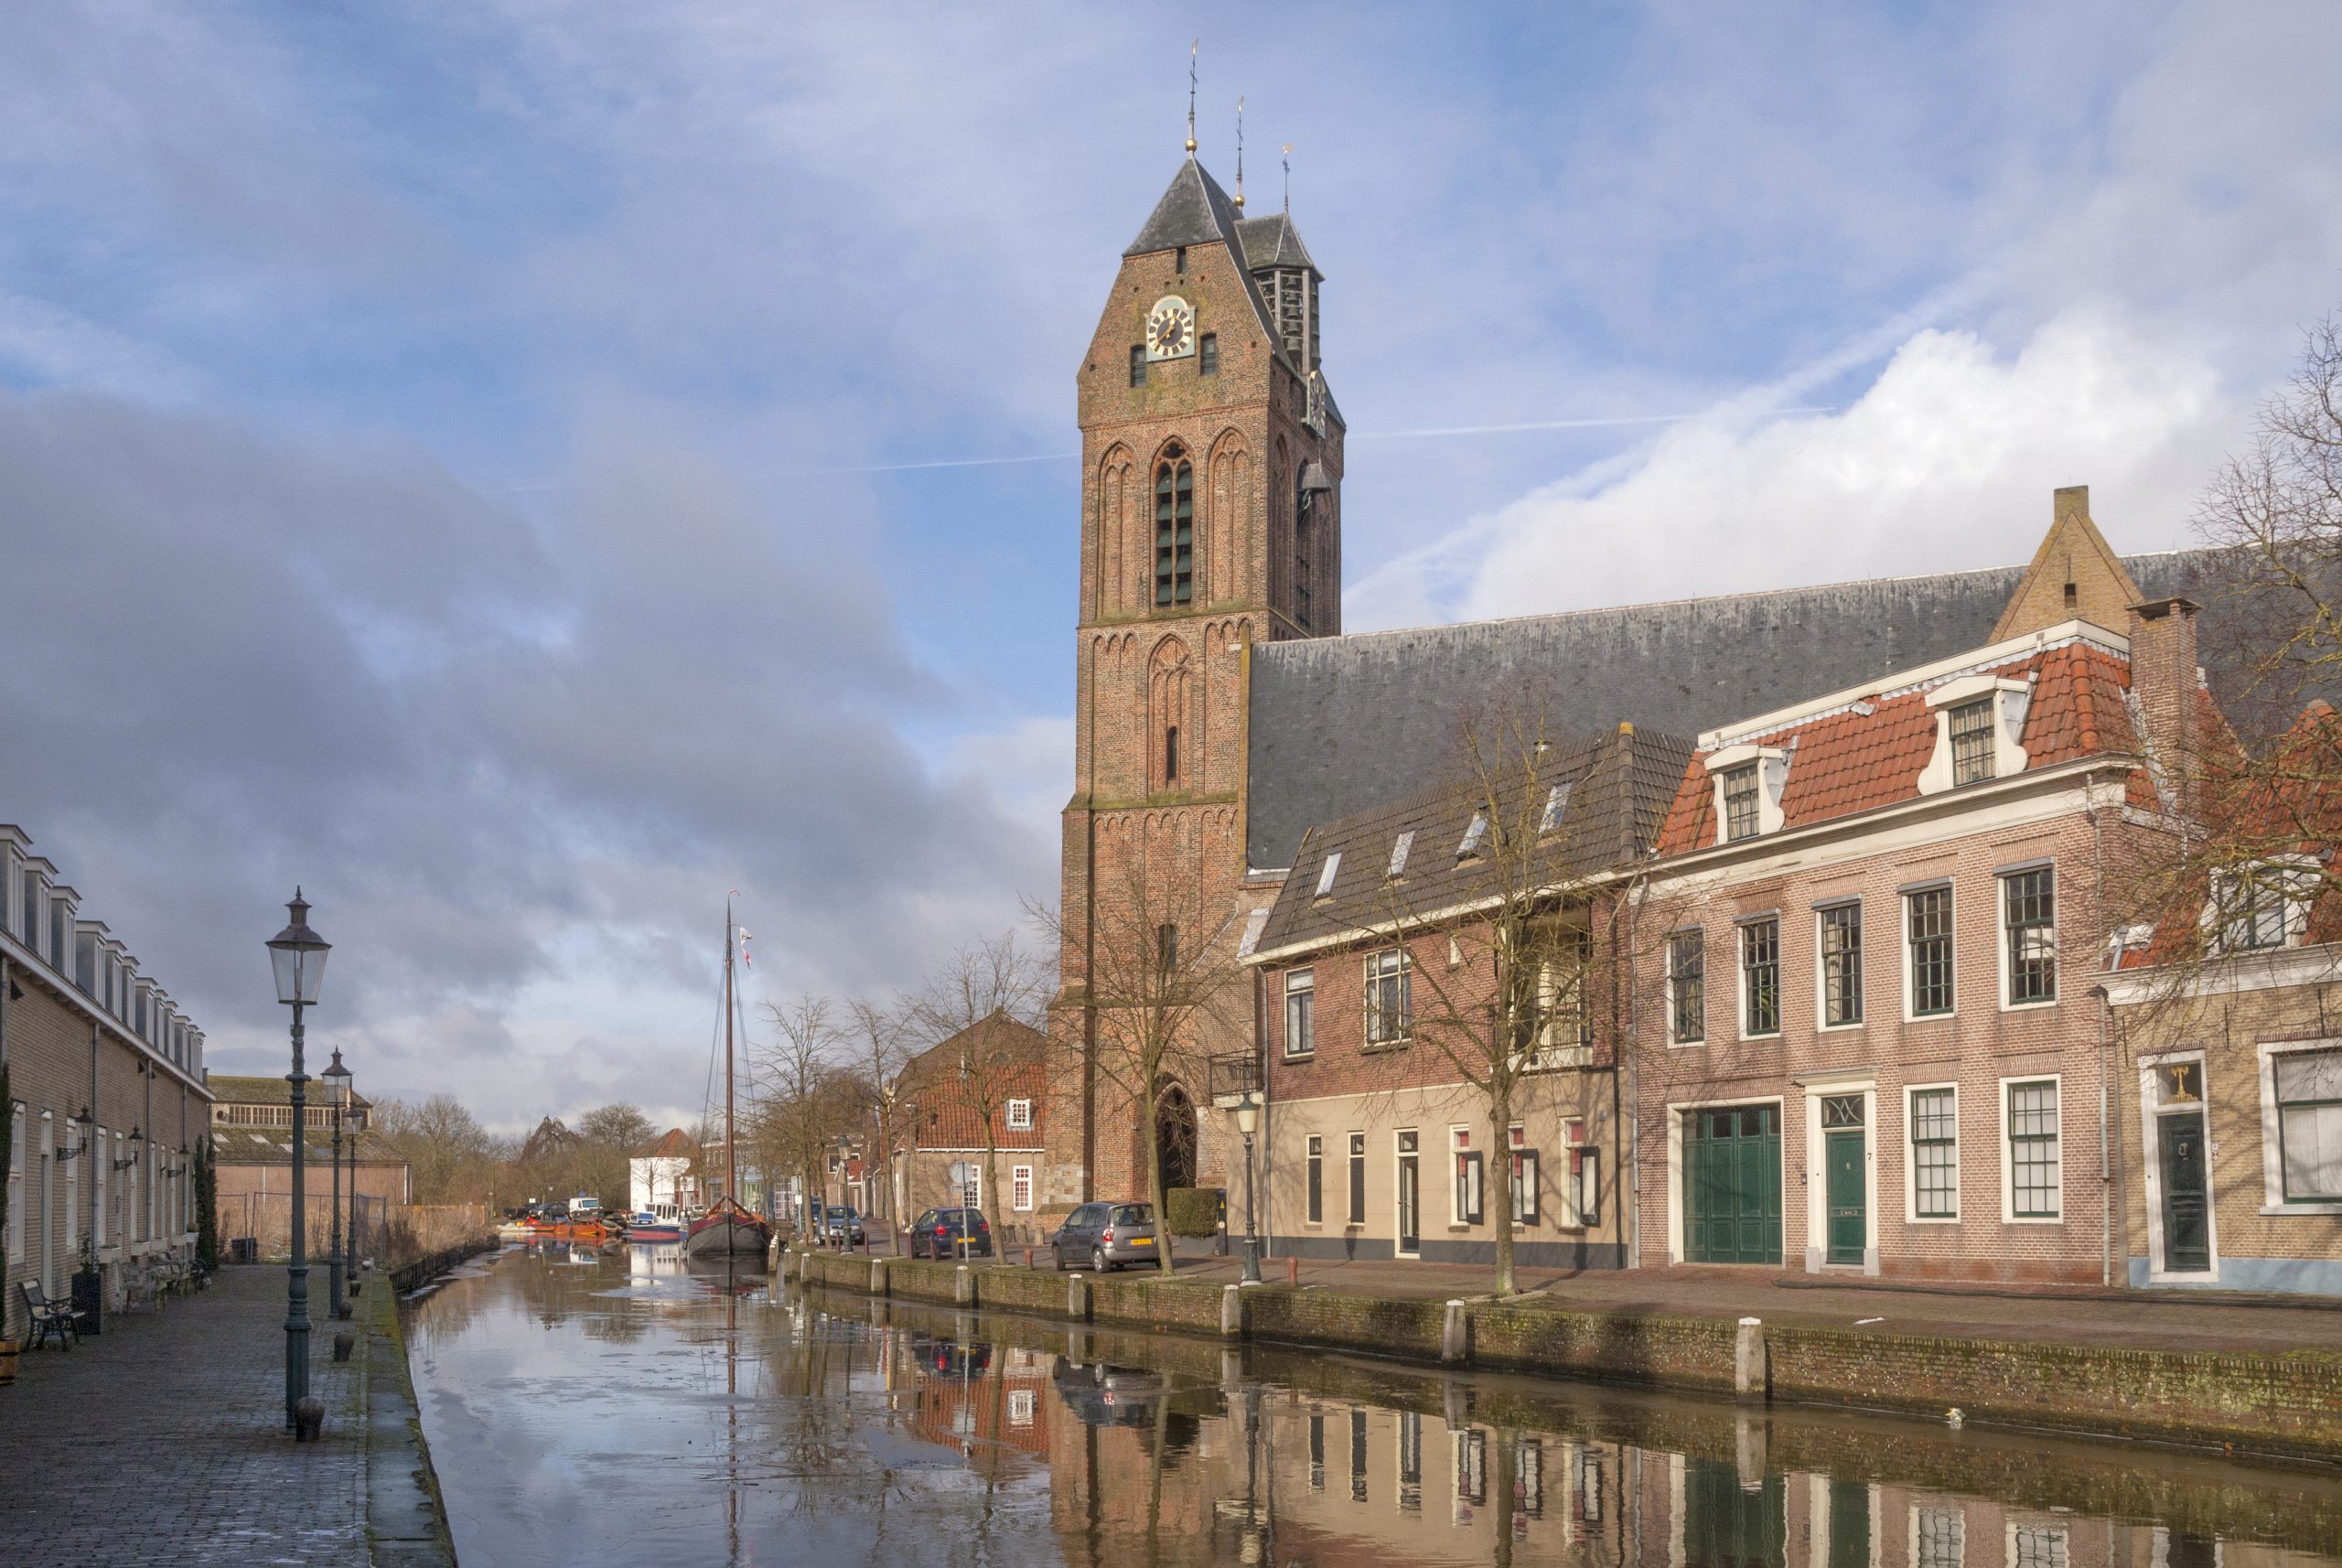 Minder geparkeerd blik in historisch centrum van Oudewater